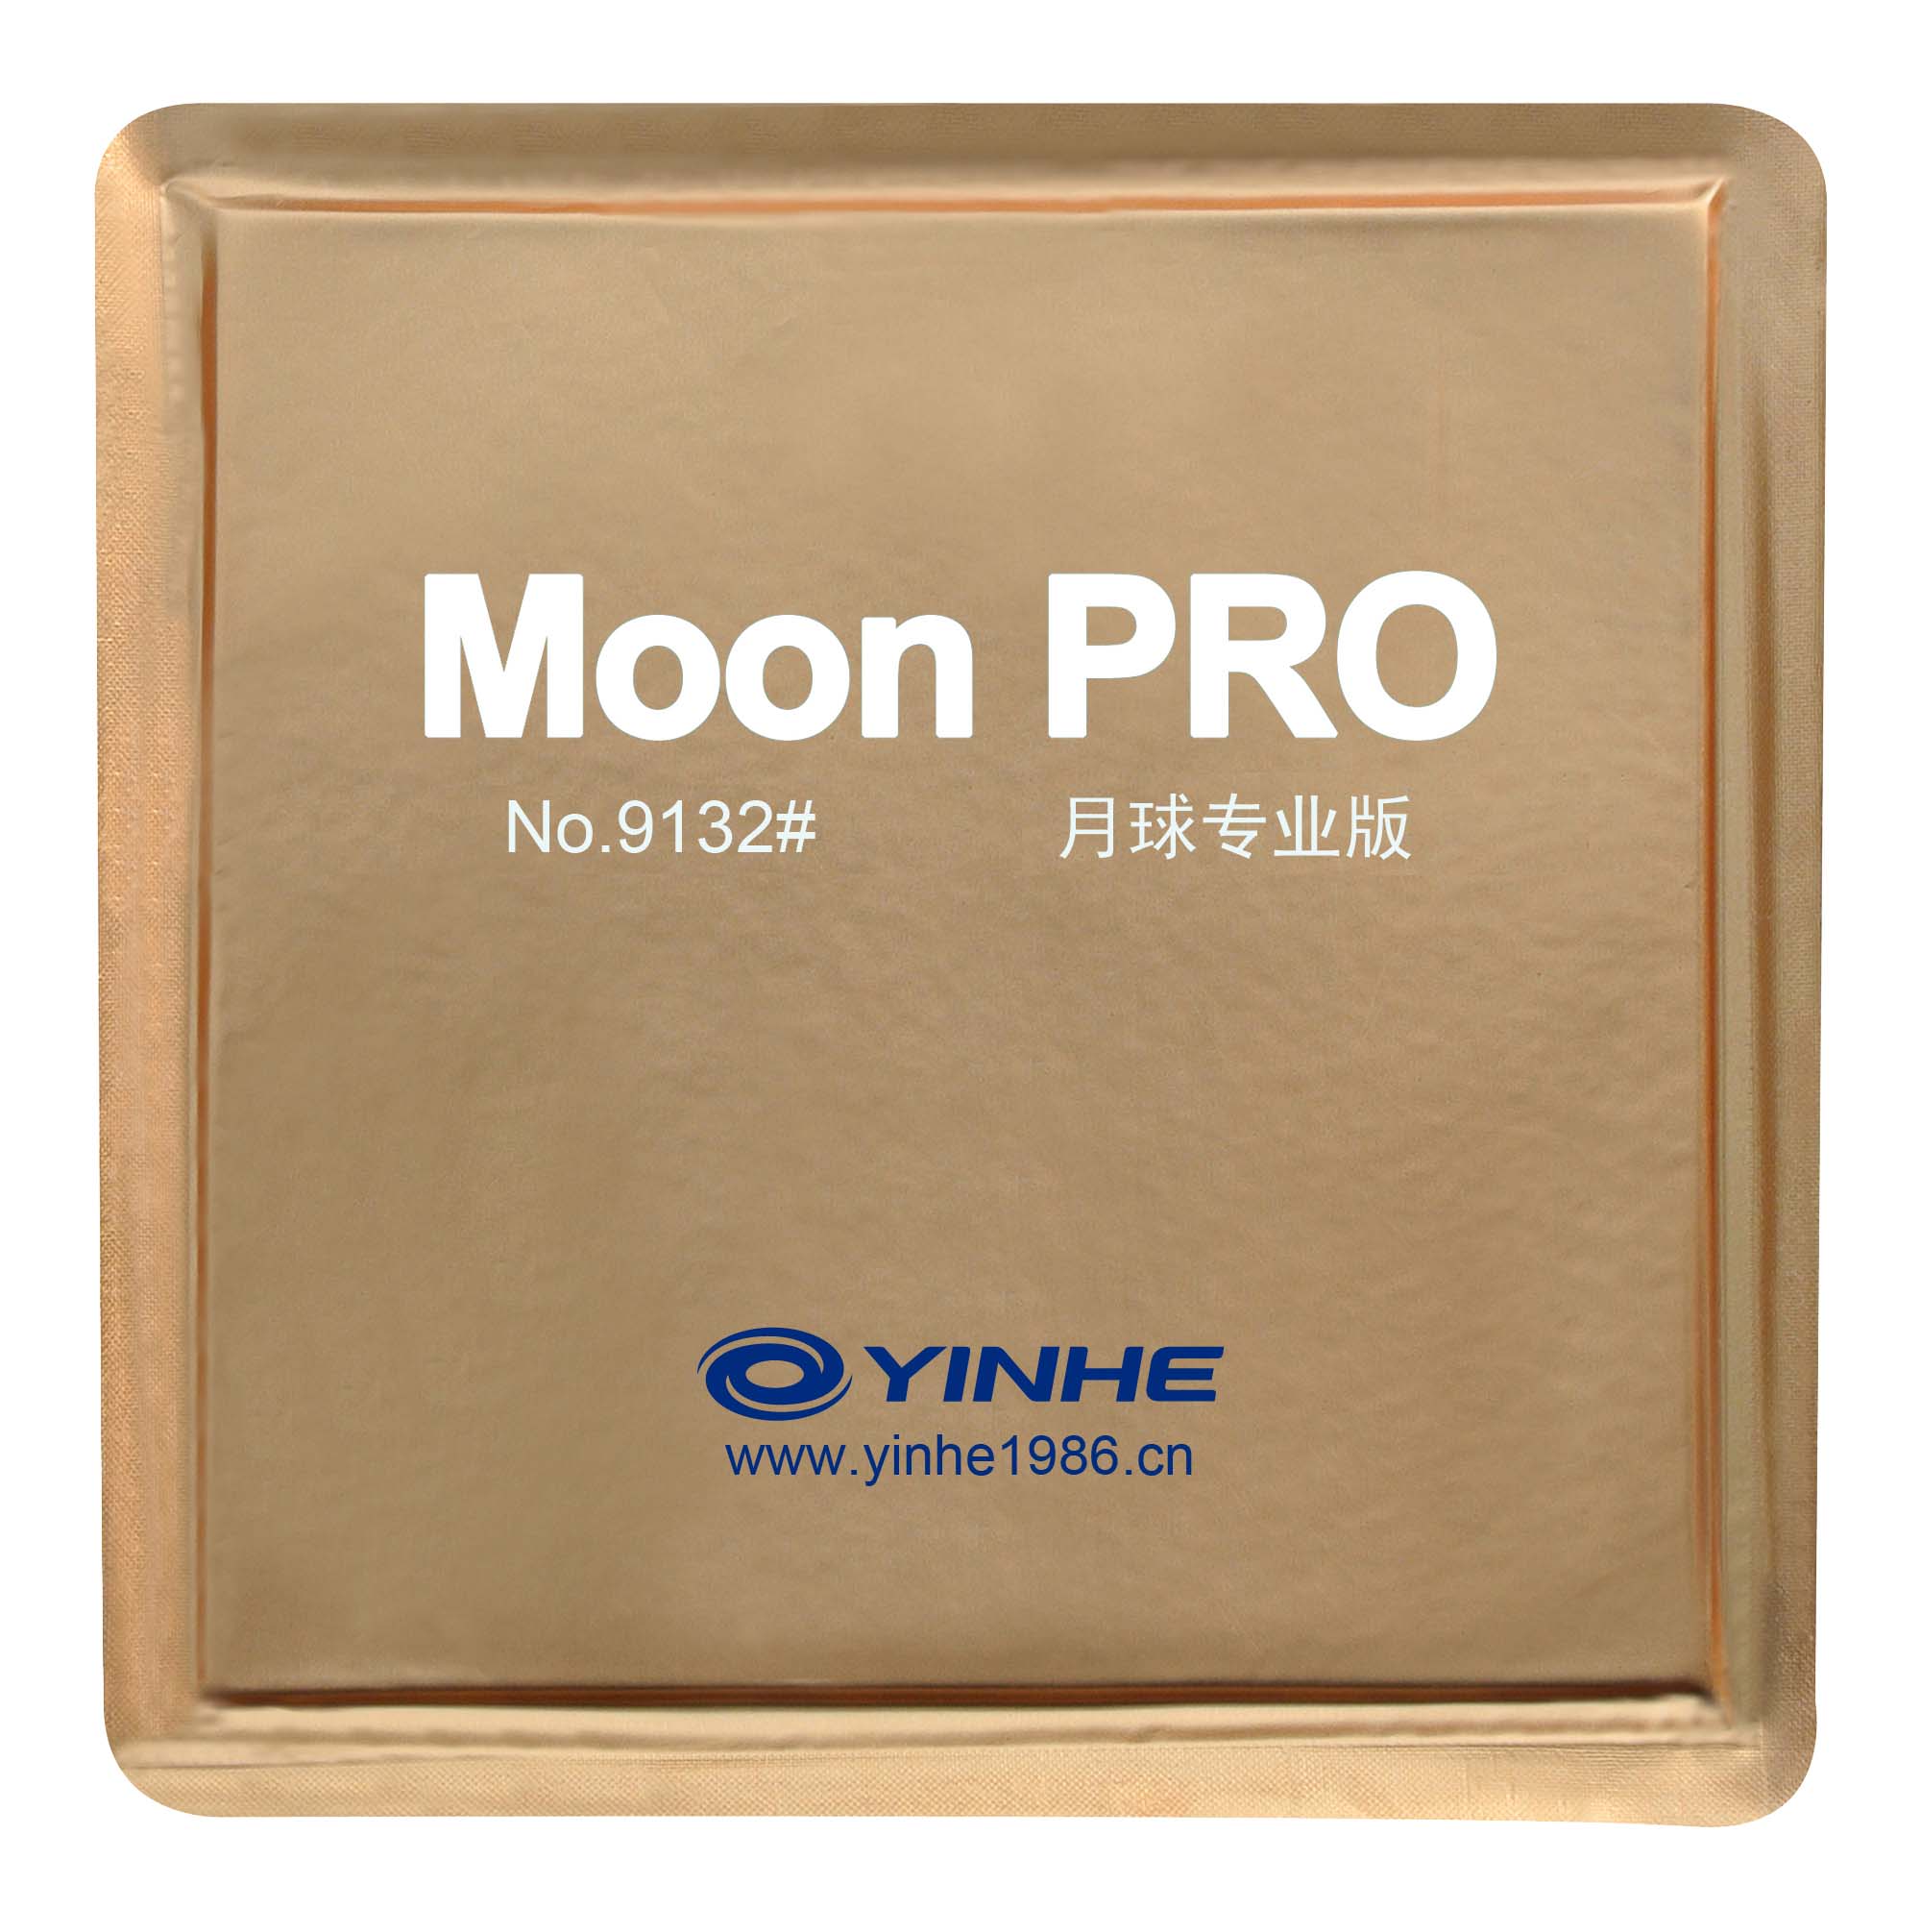 YINHE Moon Pro